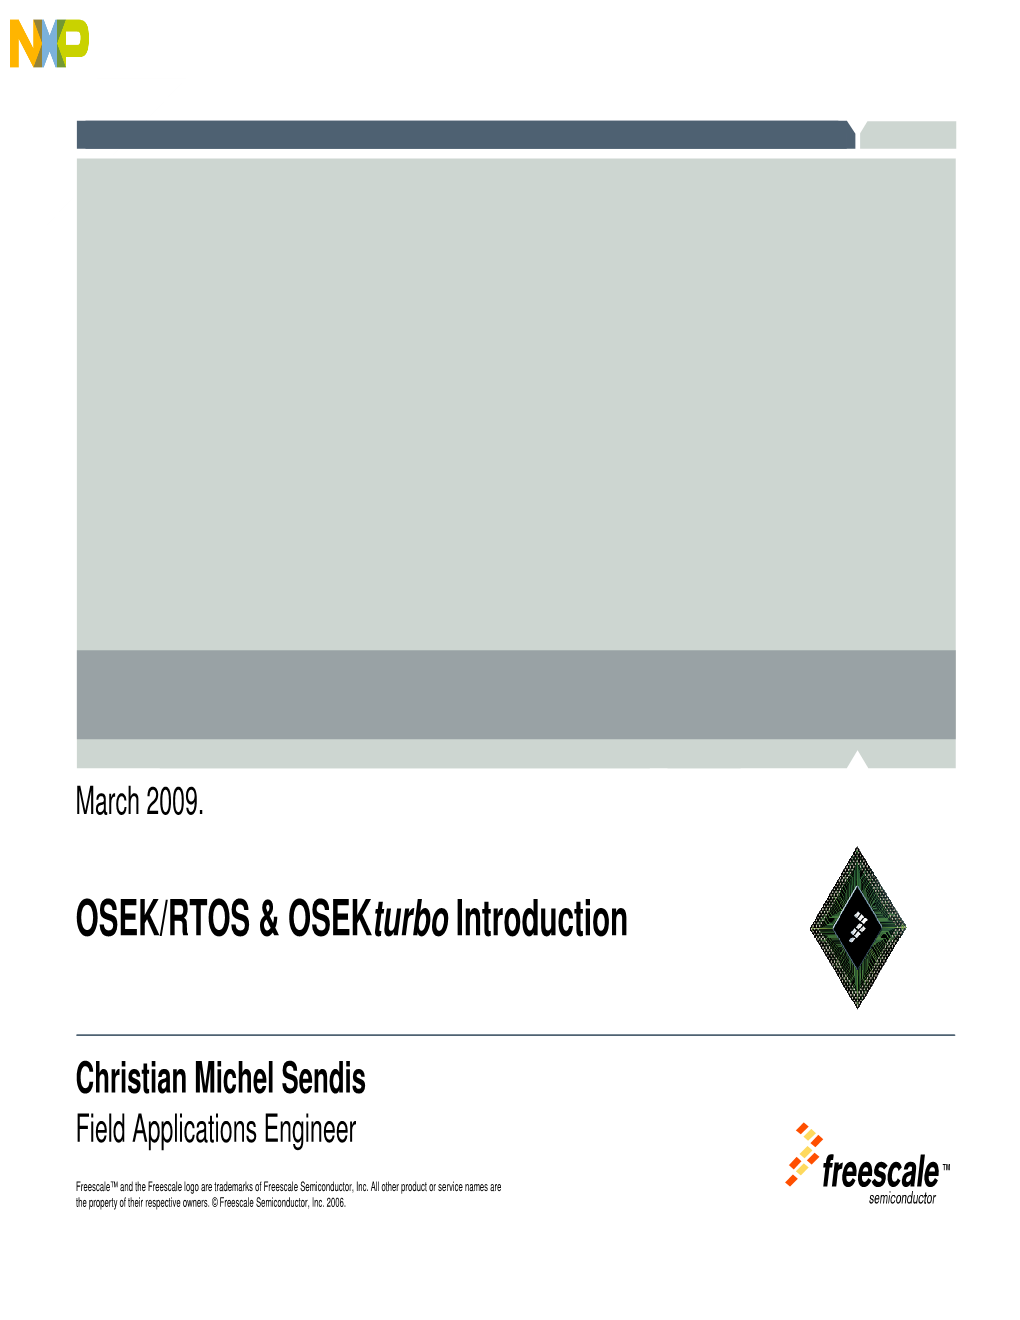 OSEK/RTOS & Osekturbo Introduction